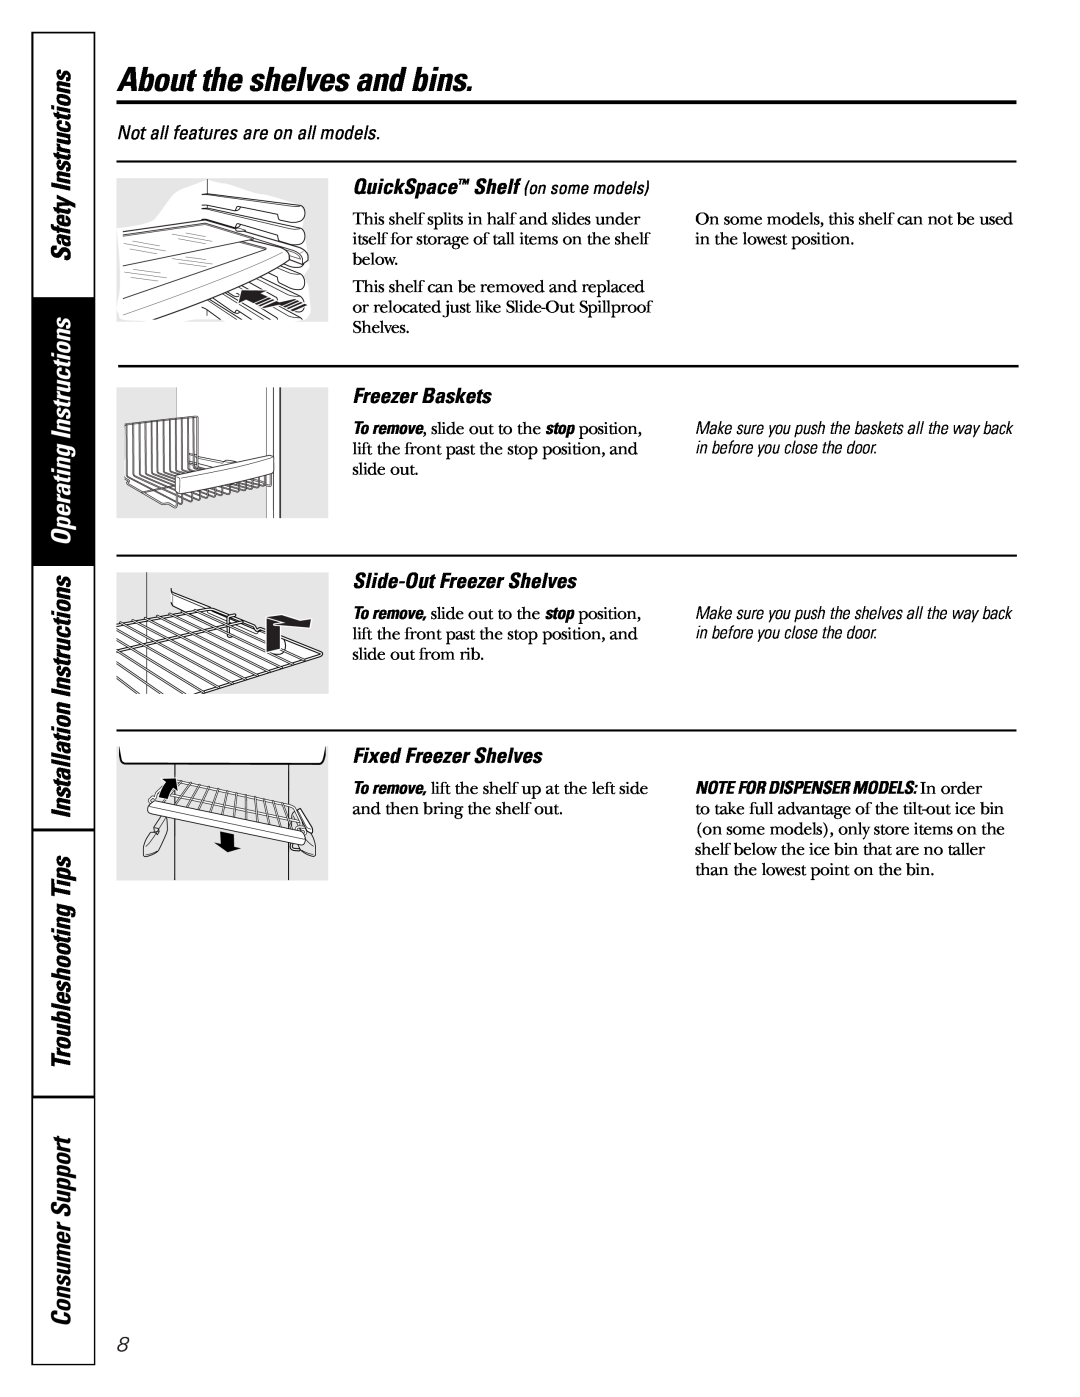 GE Monogram 23 Instructions Safety, QuickSpace Shelf on some models, Freezer Baskets, Slide-OutFreezer Shelves 